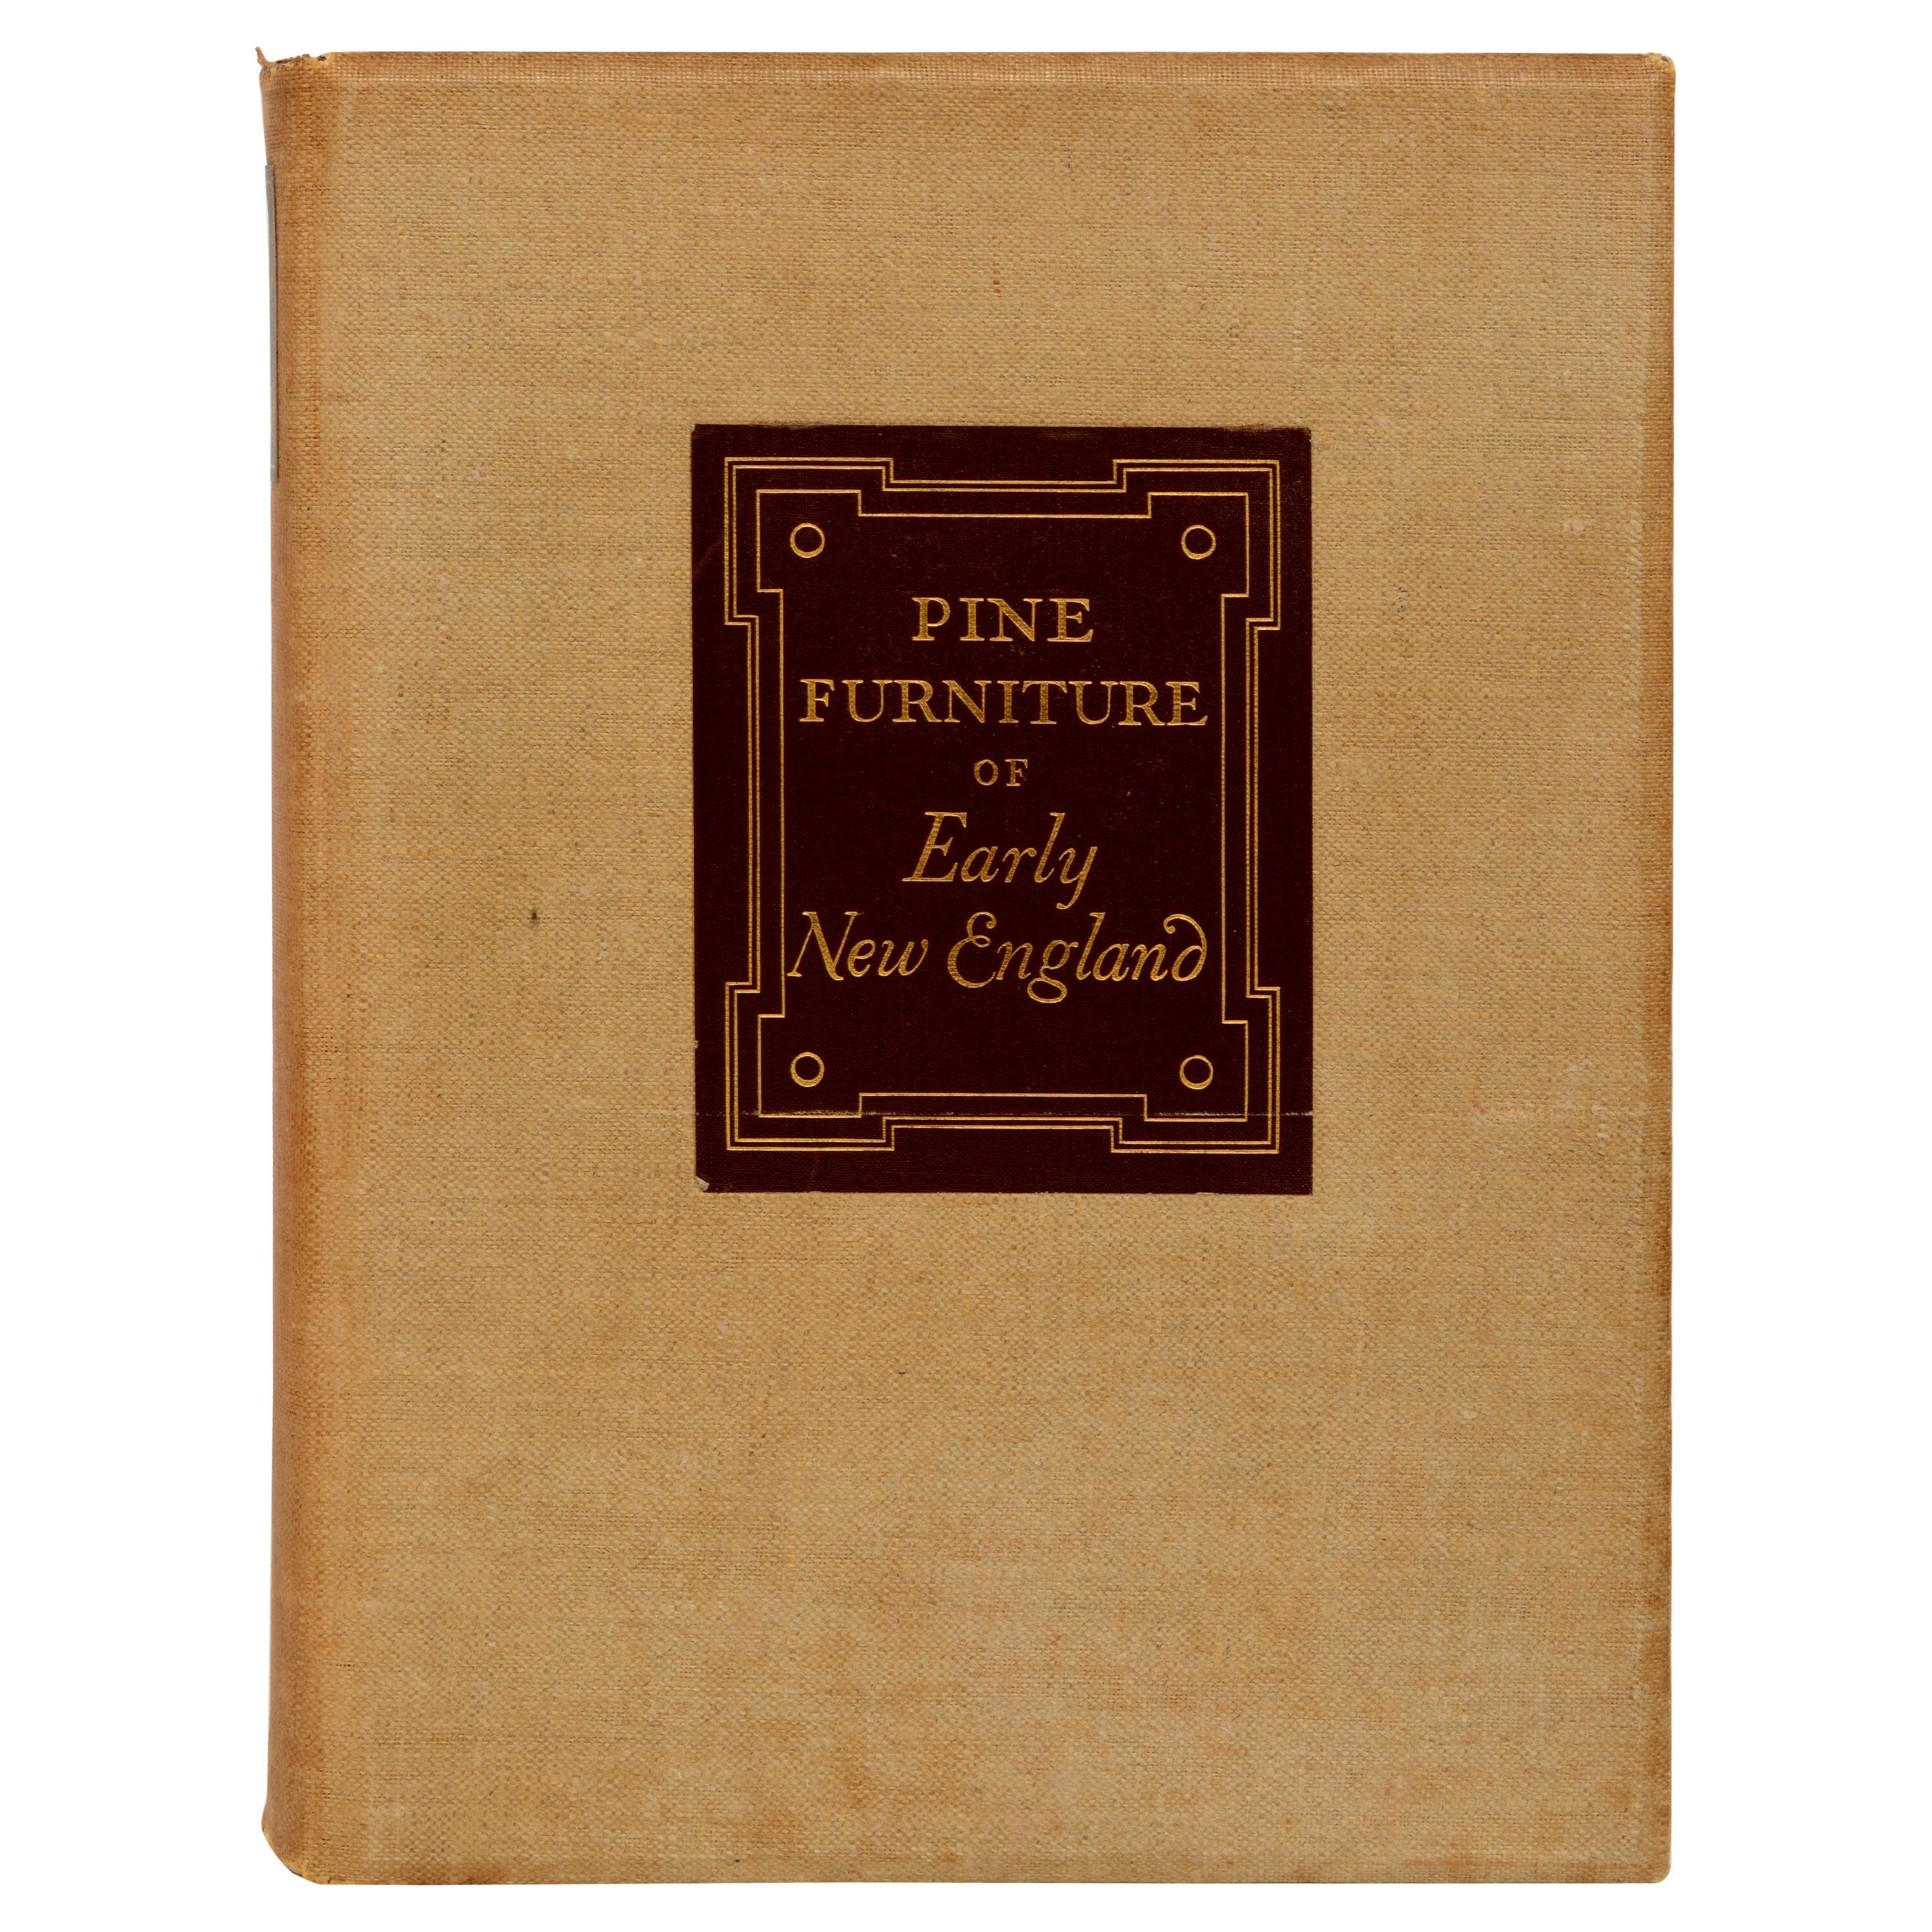 Kiefernholzmöbel aus frühem Neuengland von Russell Kettell, 1. limitierte Auflage